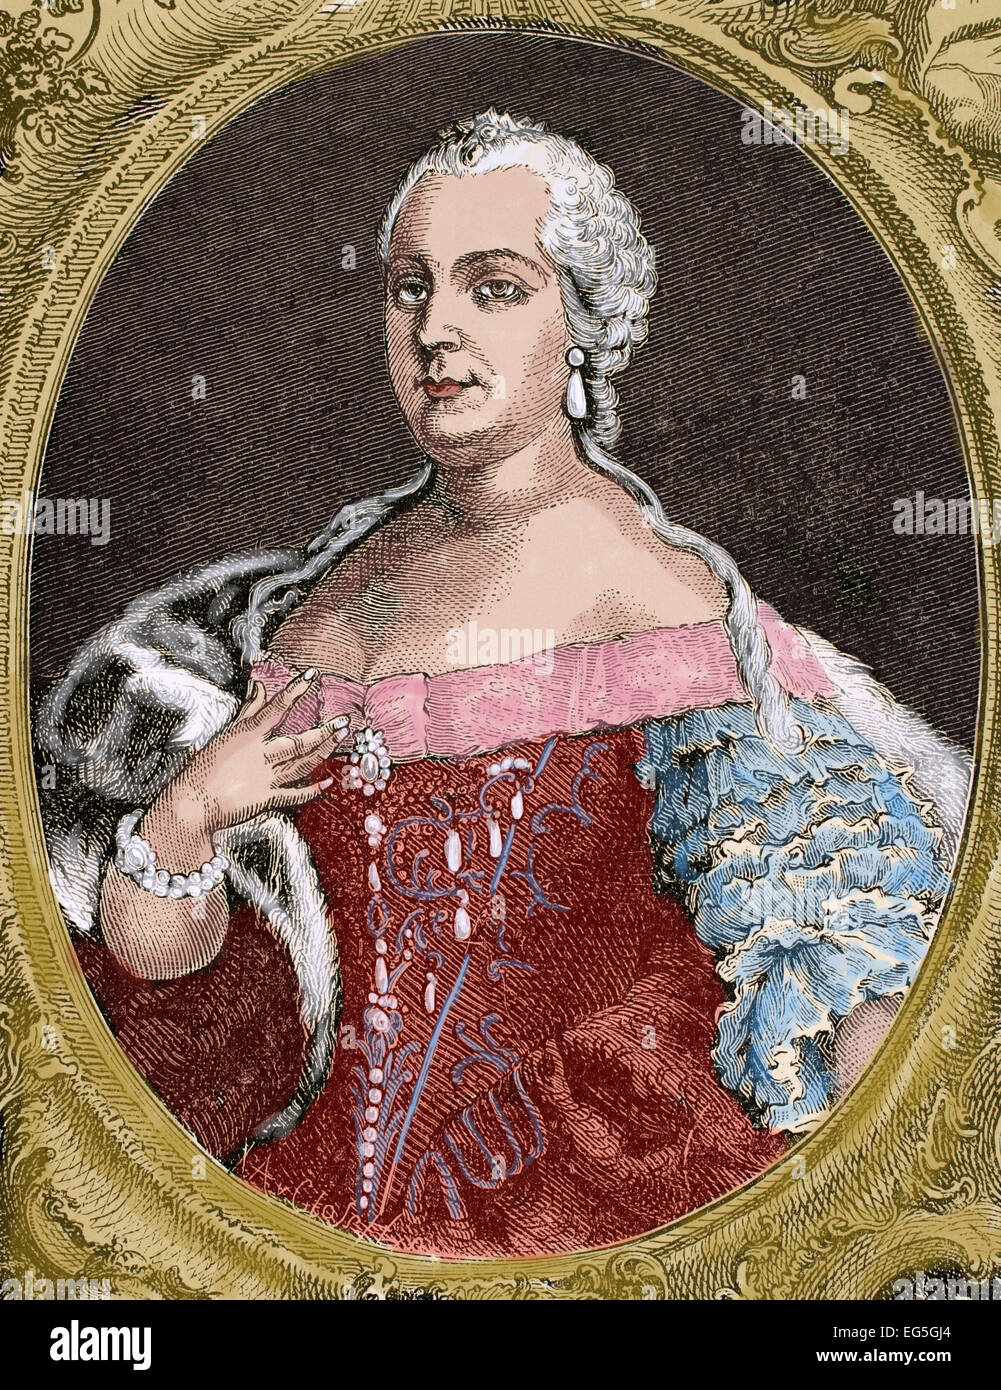 Marie-thérèse (1717-1780), Archiduchesse d'Ausria, Reine de Hongrie et de Bohème. Portrait. Gravure par de Petit, 1743. Gravure de Germania, 1882. De couleur. Banque D'Images